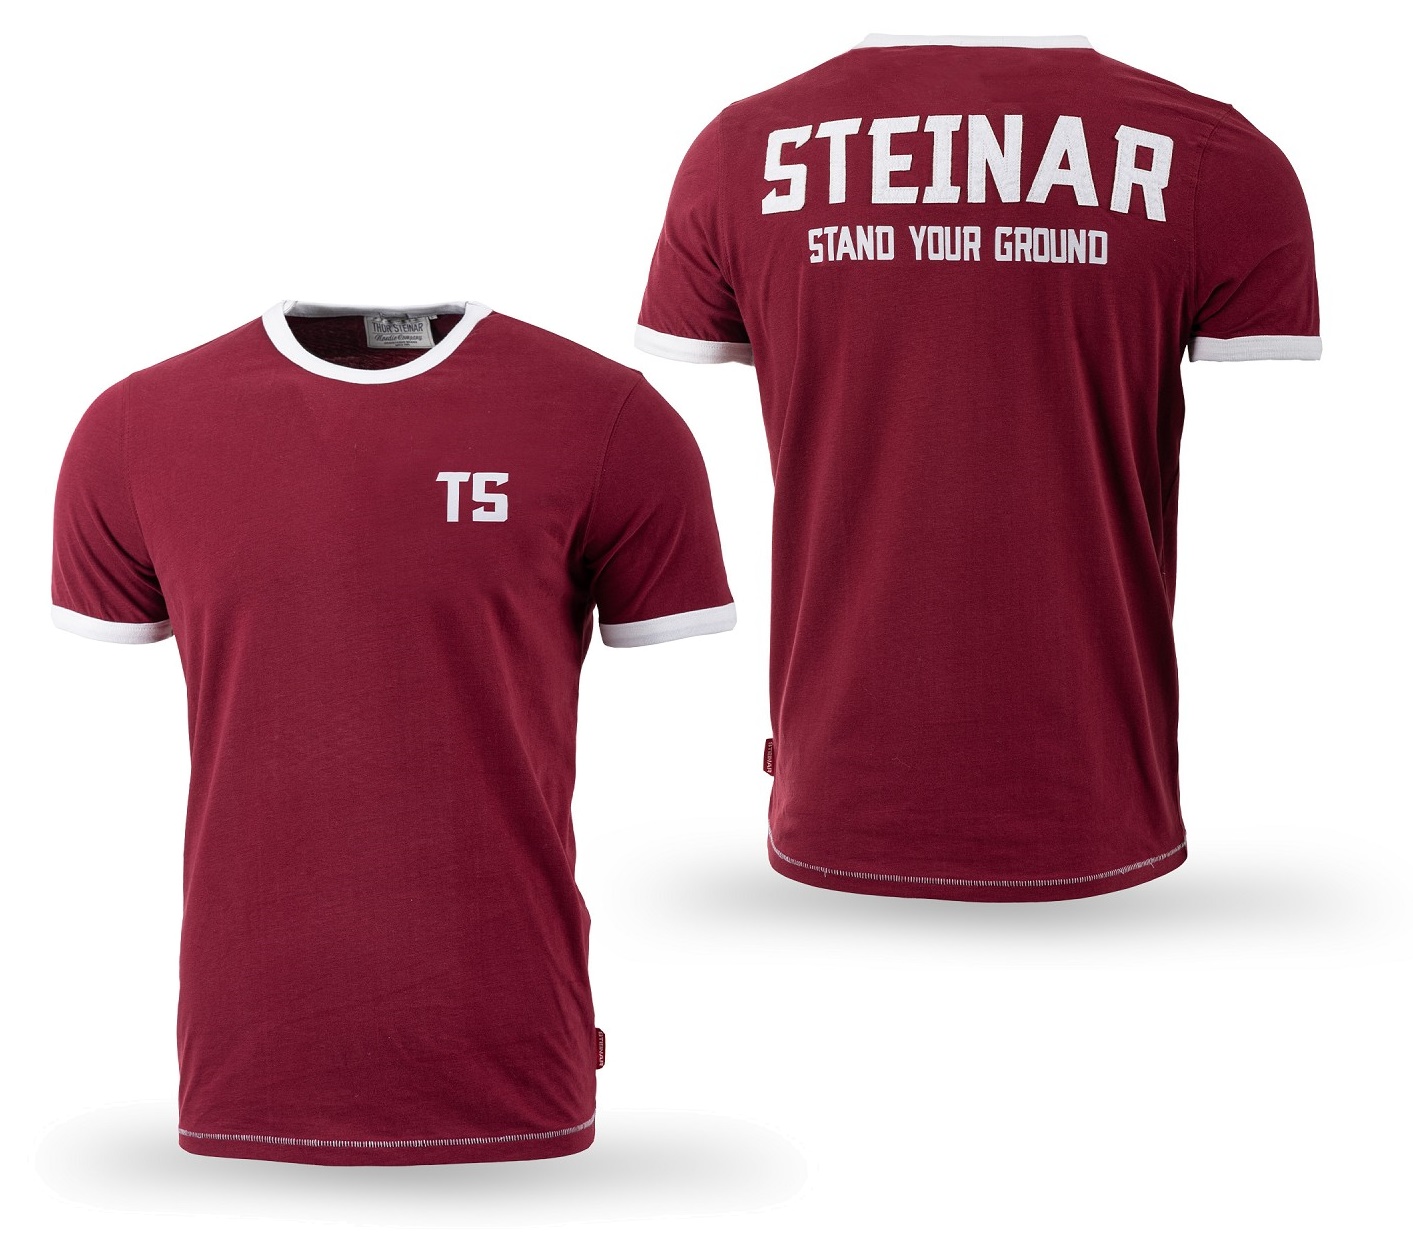 Thor Steinar T-Shirt Ground